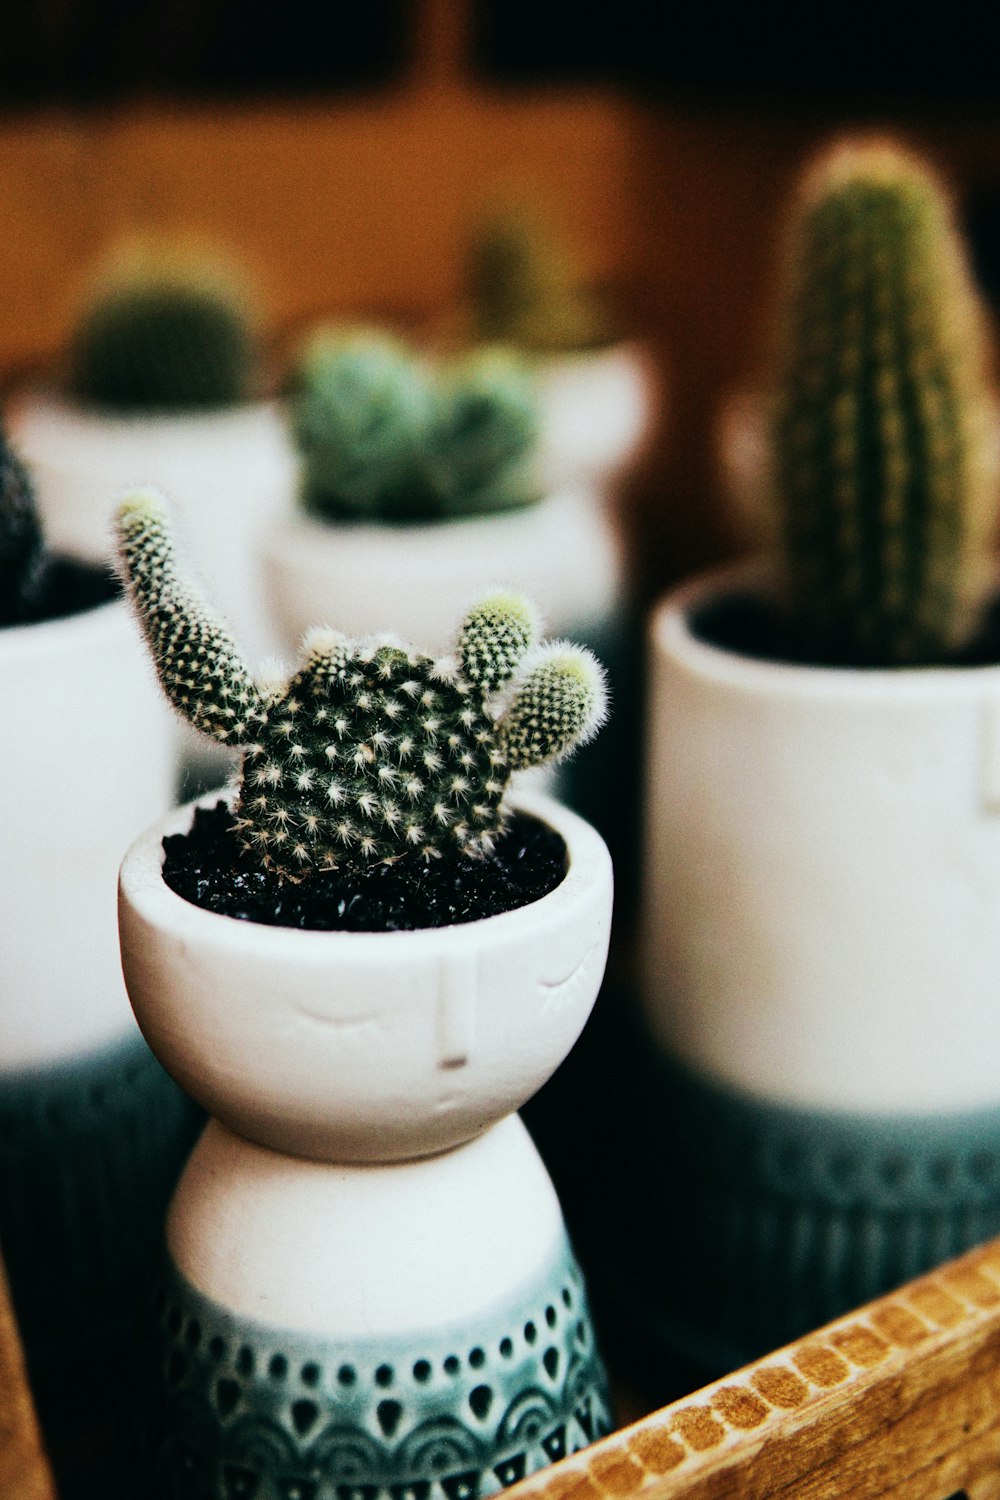 green cactus in white ceramic pot